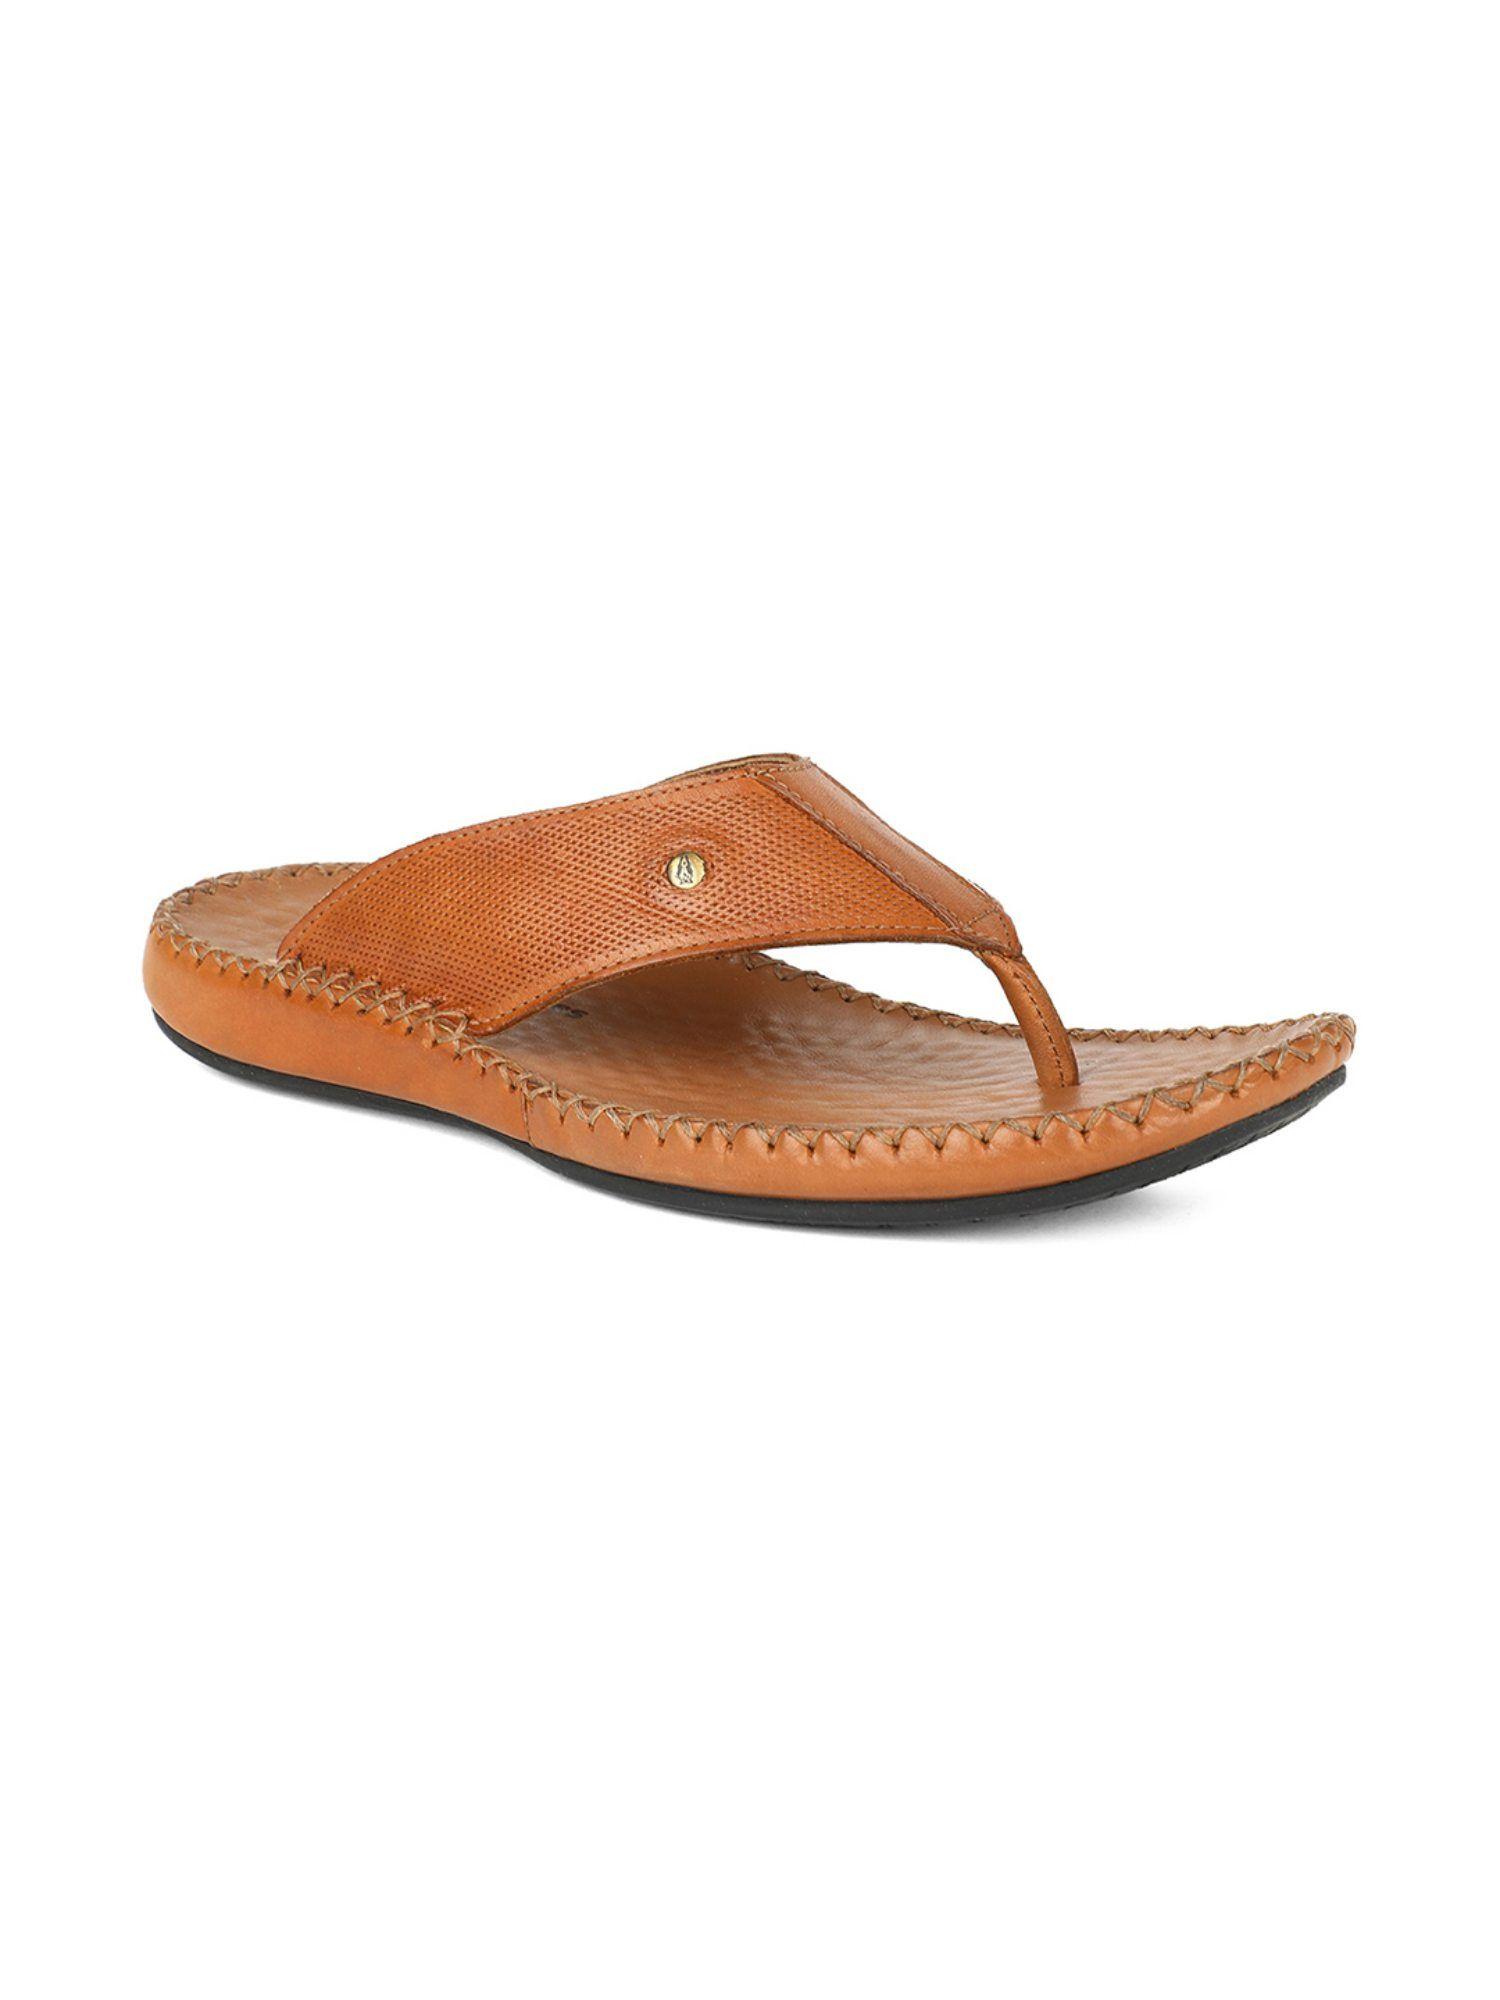 solid-tan-sandals